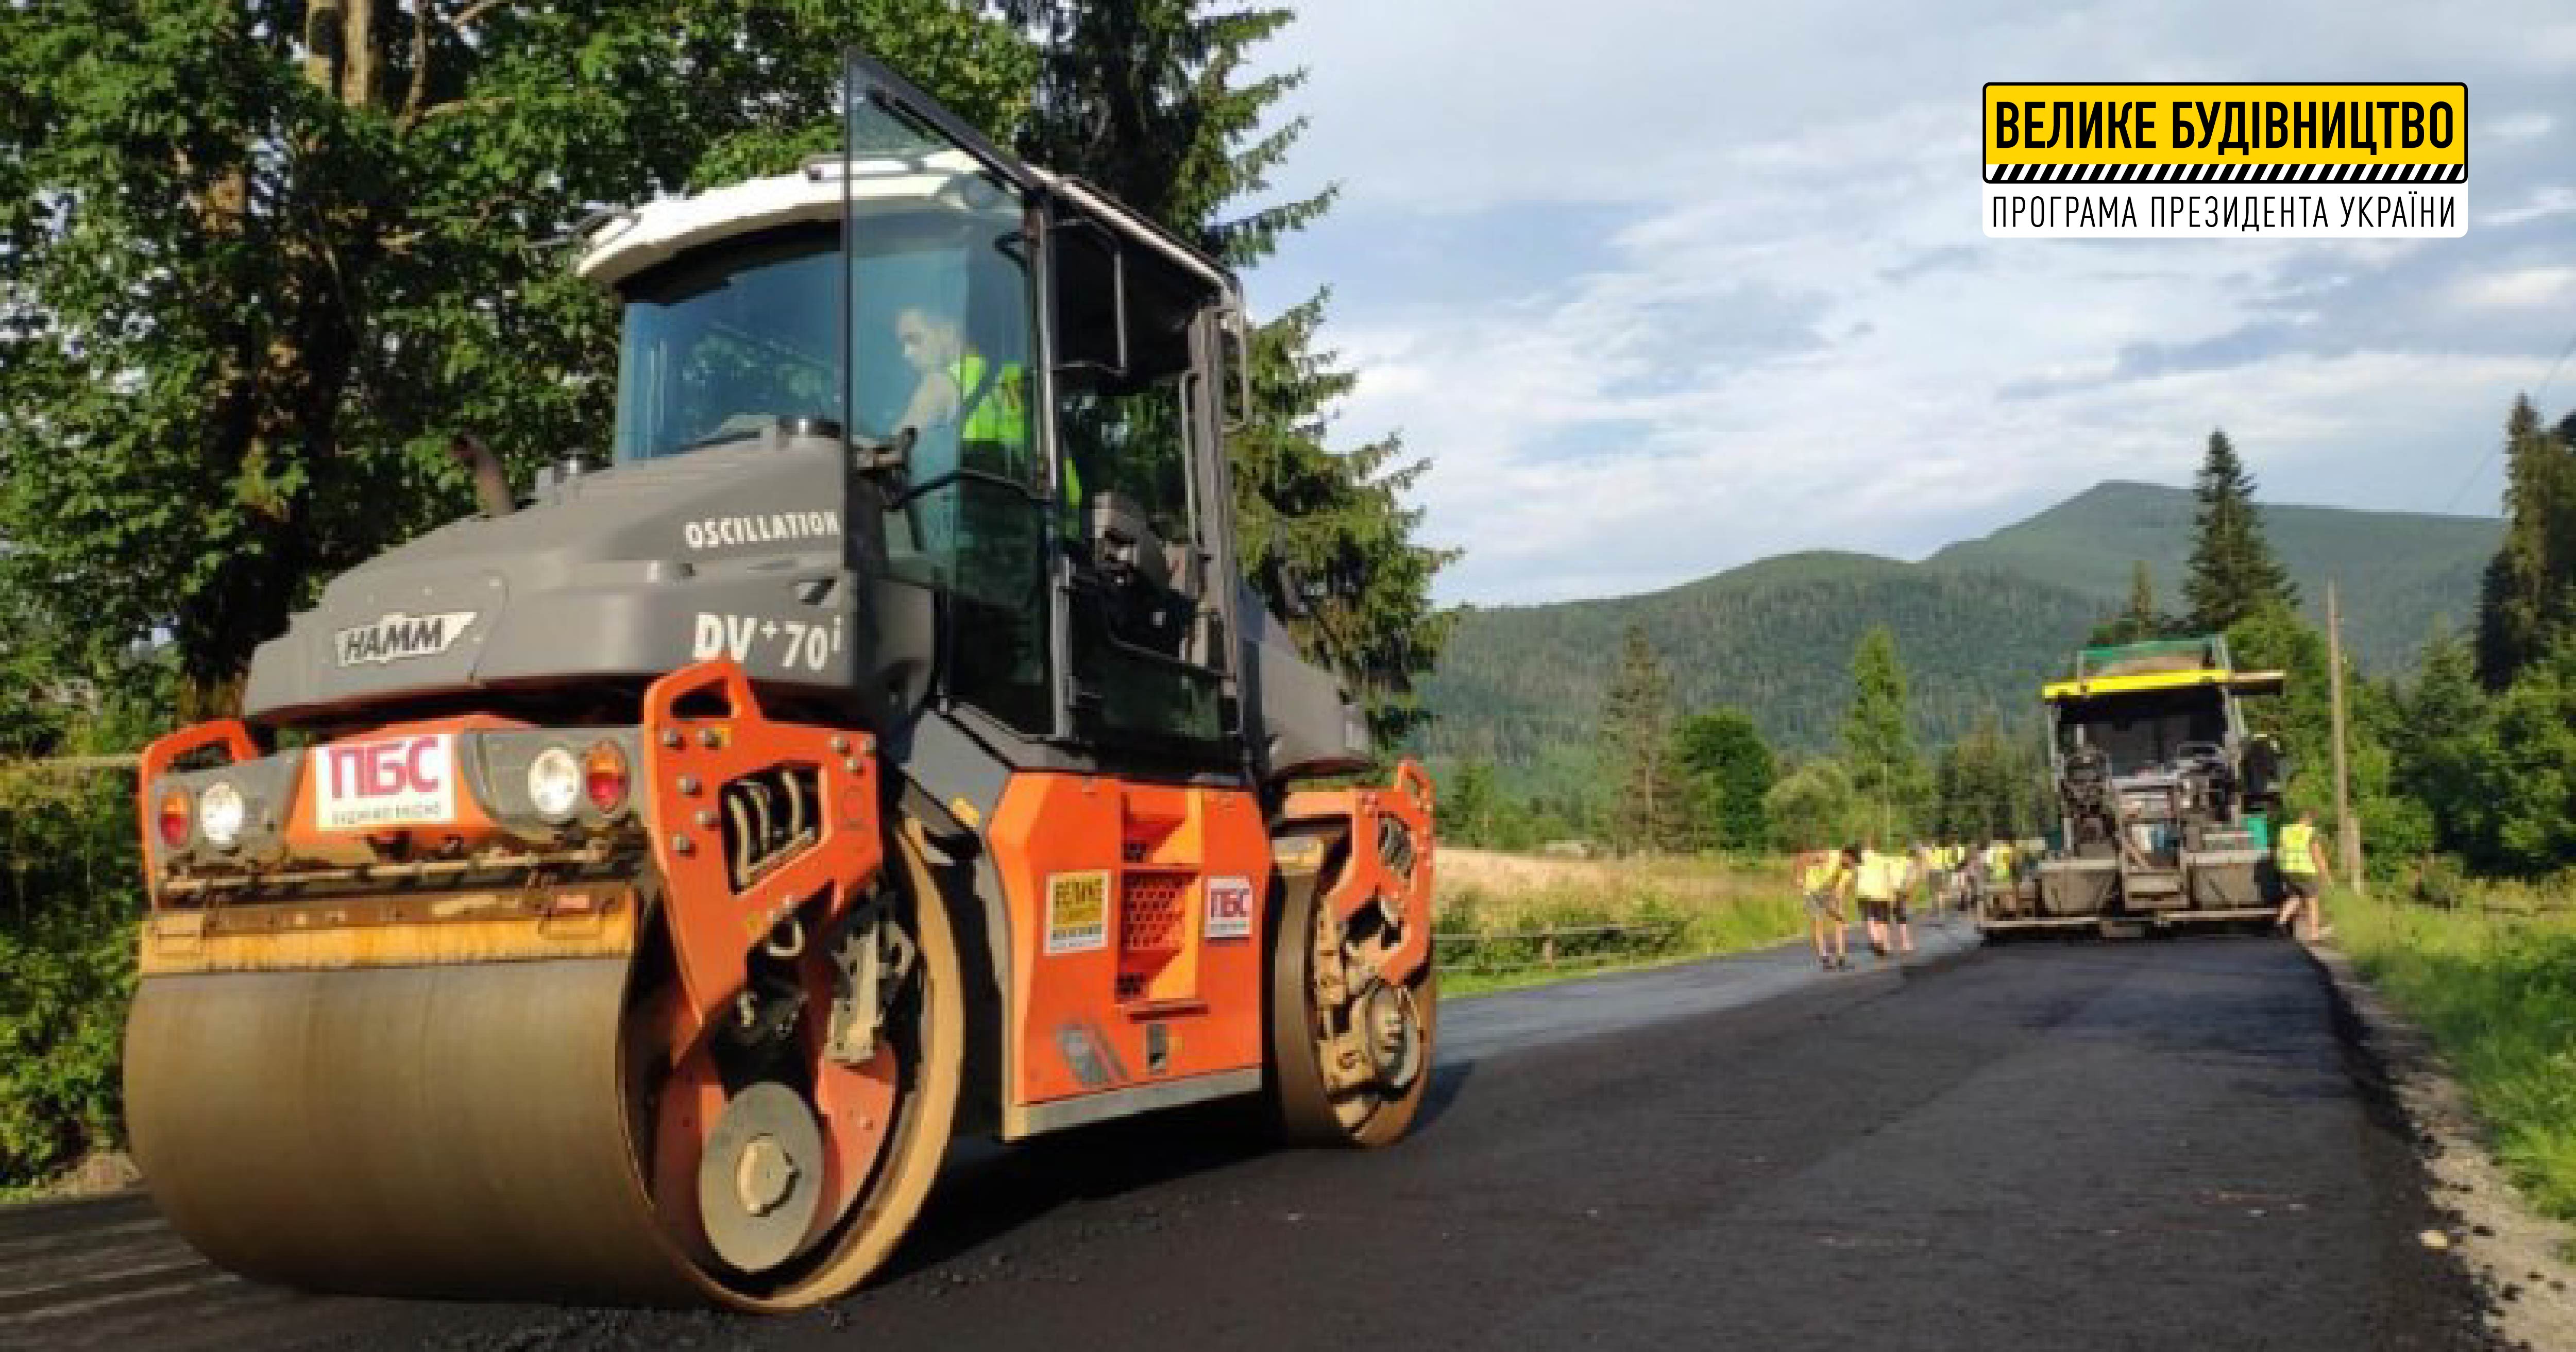 На Хустщині відновлюють дорогу до однієї з туристичних родзинок